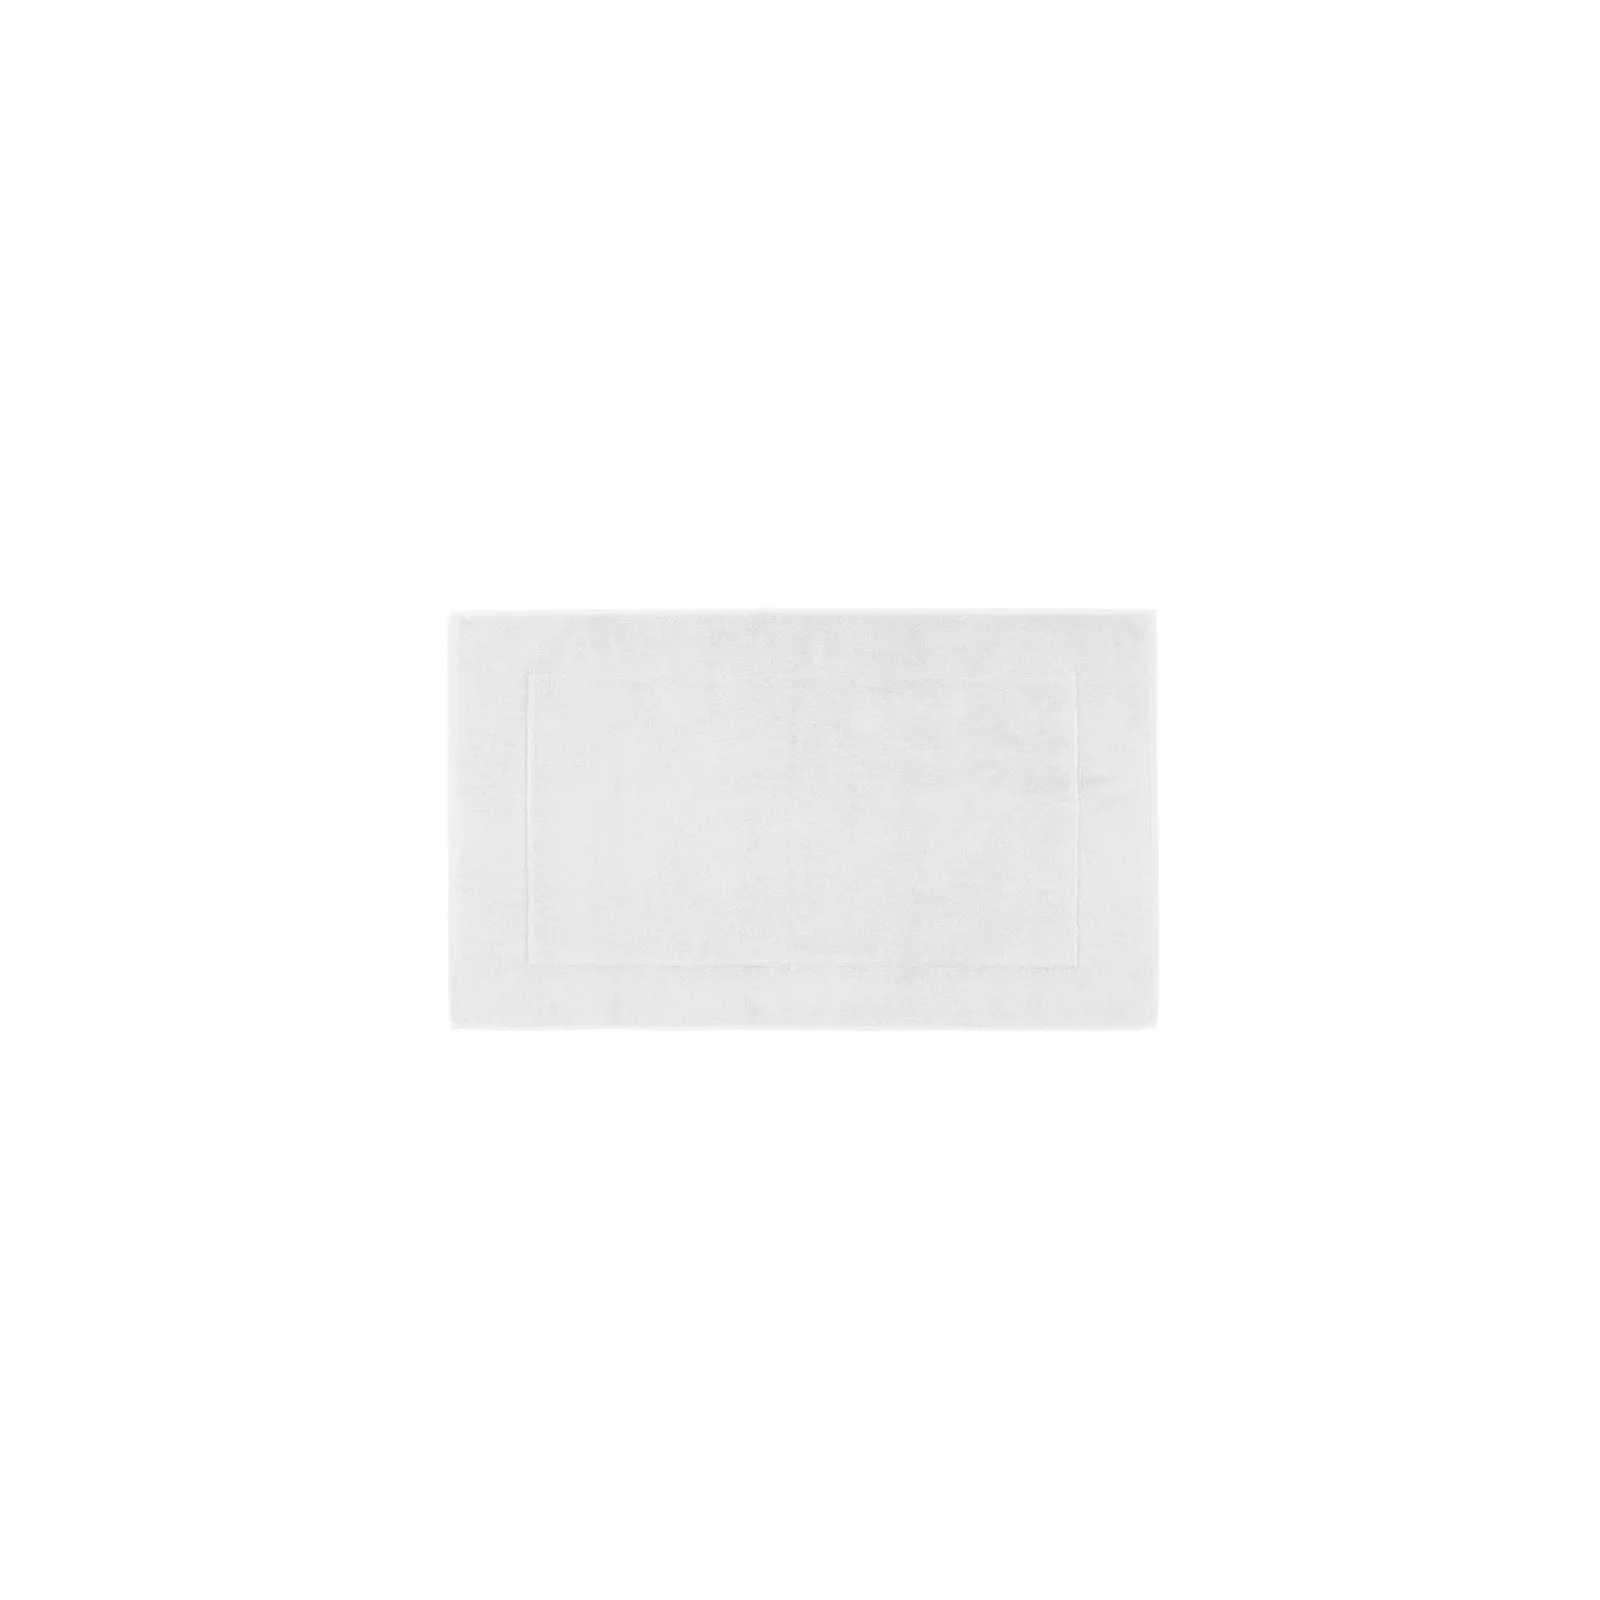 TAPIS DE BAIN GRAND HOTEL Color-WHITE Dimension-20X33 Composition-COTON - WHITE